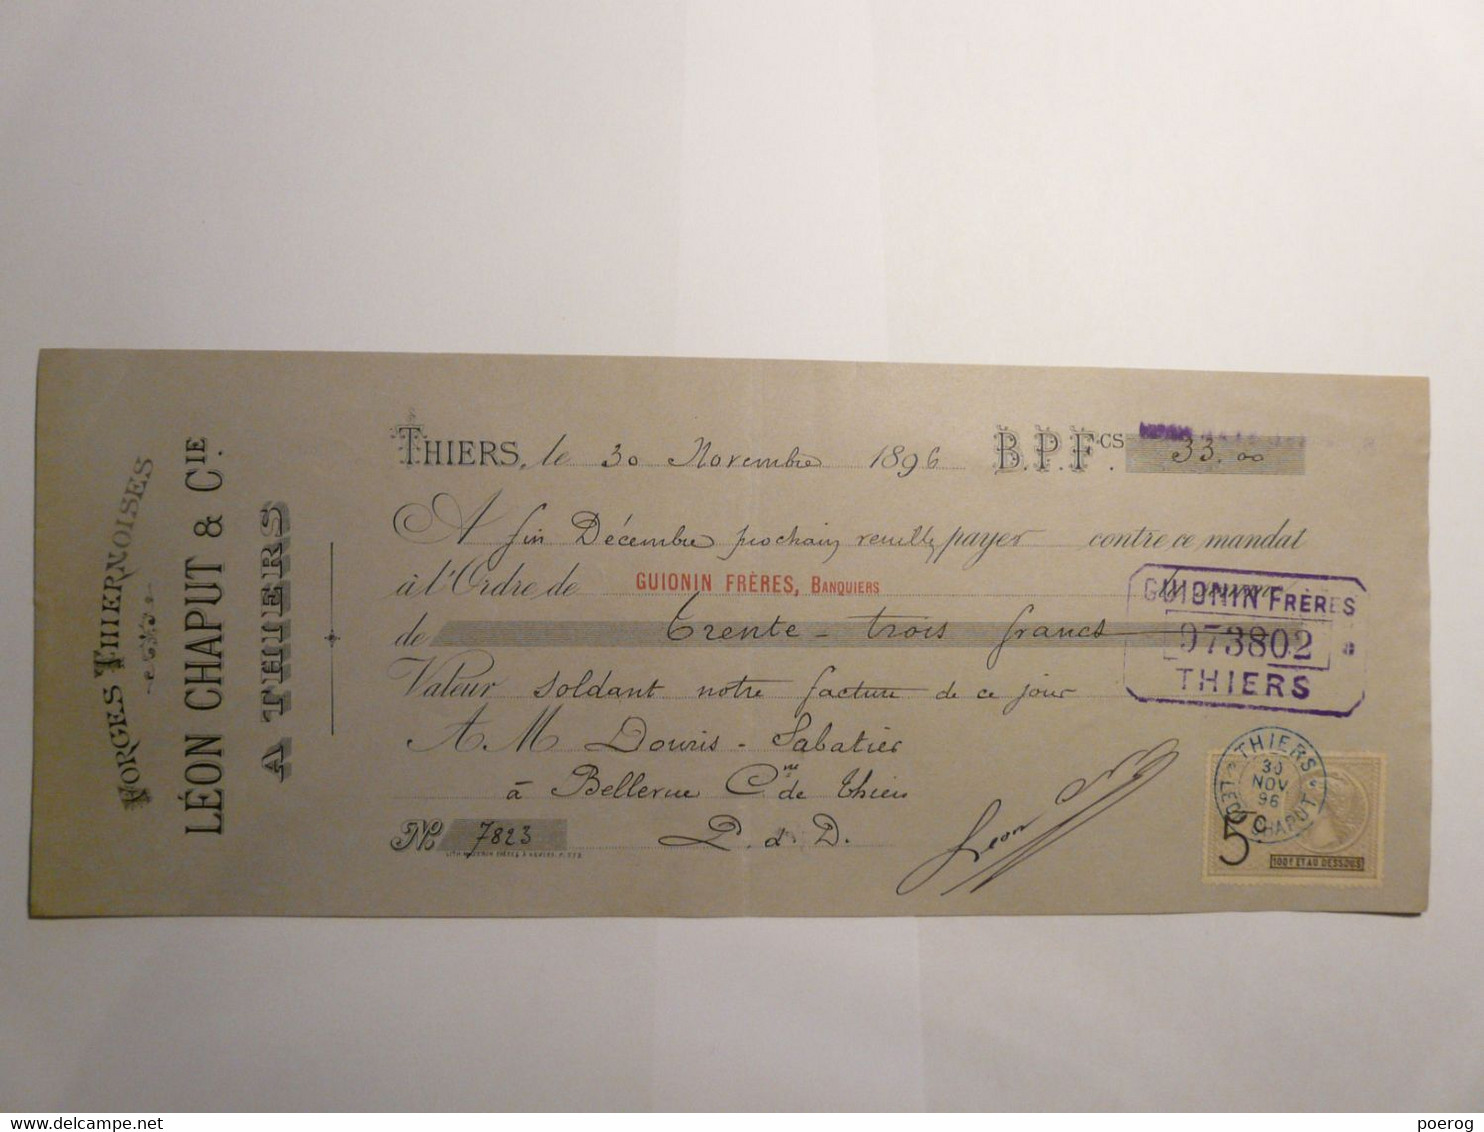 MANDAT LETTRE DE CHANGE CHEQUE 1896 - LEON CHAPUT & CIE THIERS - DOURIS SABATIER JEUNE COUTELLERIE - GUIONIN FRERES - Bills Of Exchange